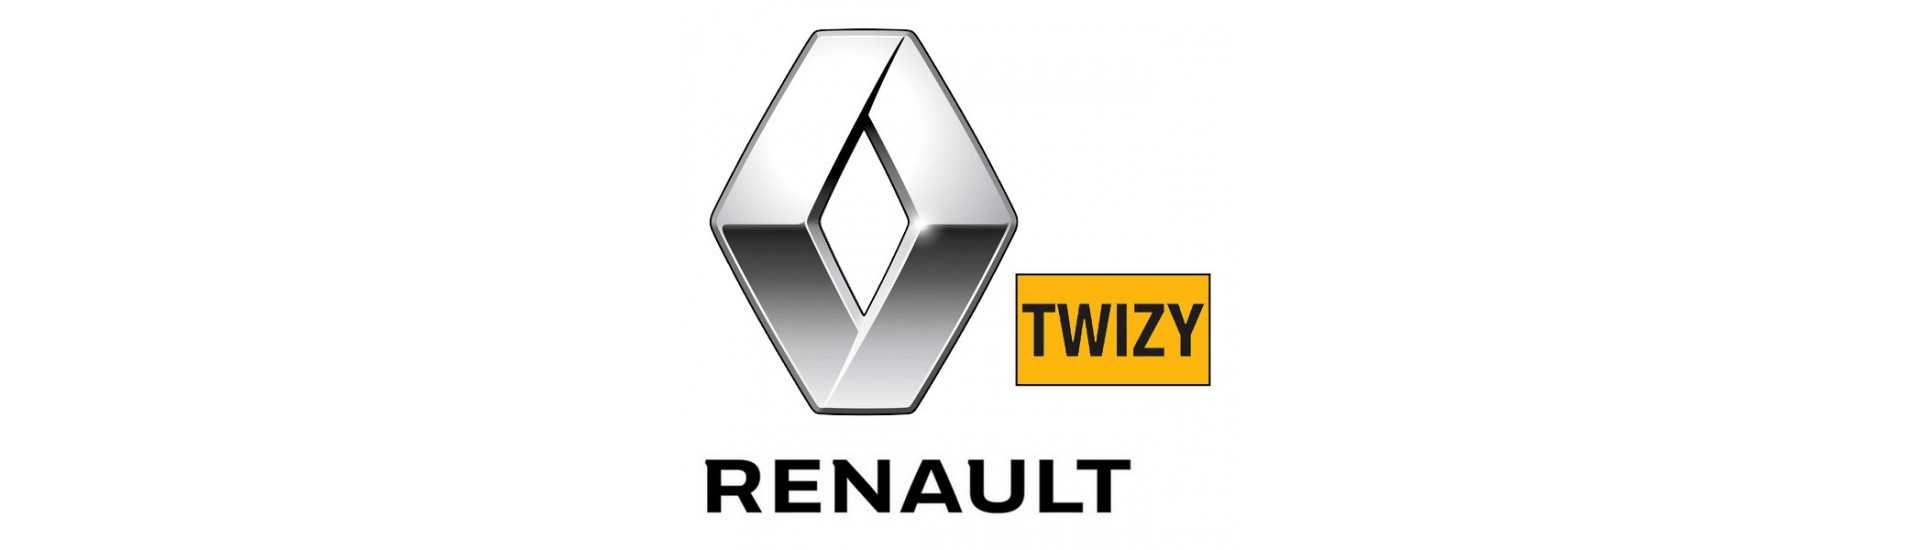 Selo de pare de ruptura ao melhor preço carro sem permissão Renault Twizy